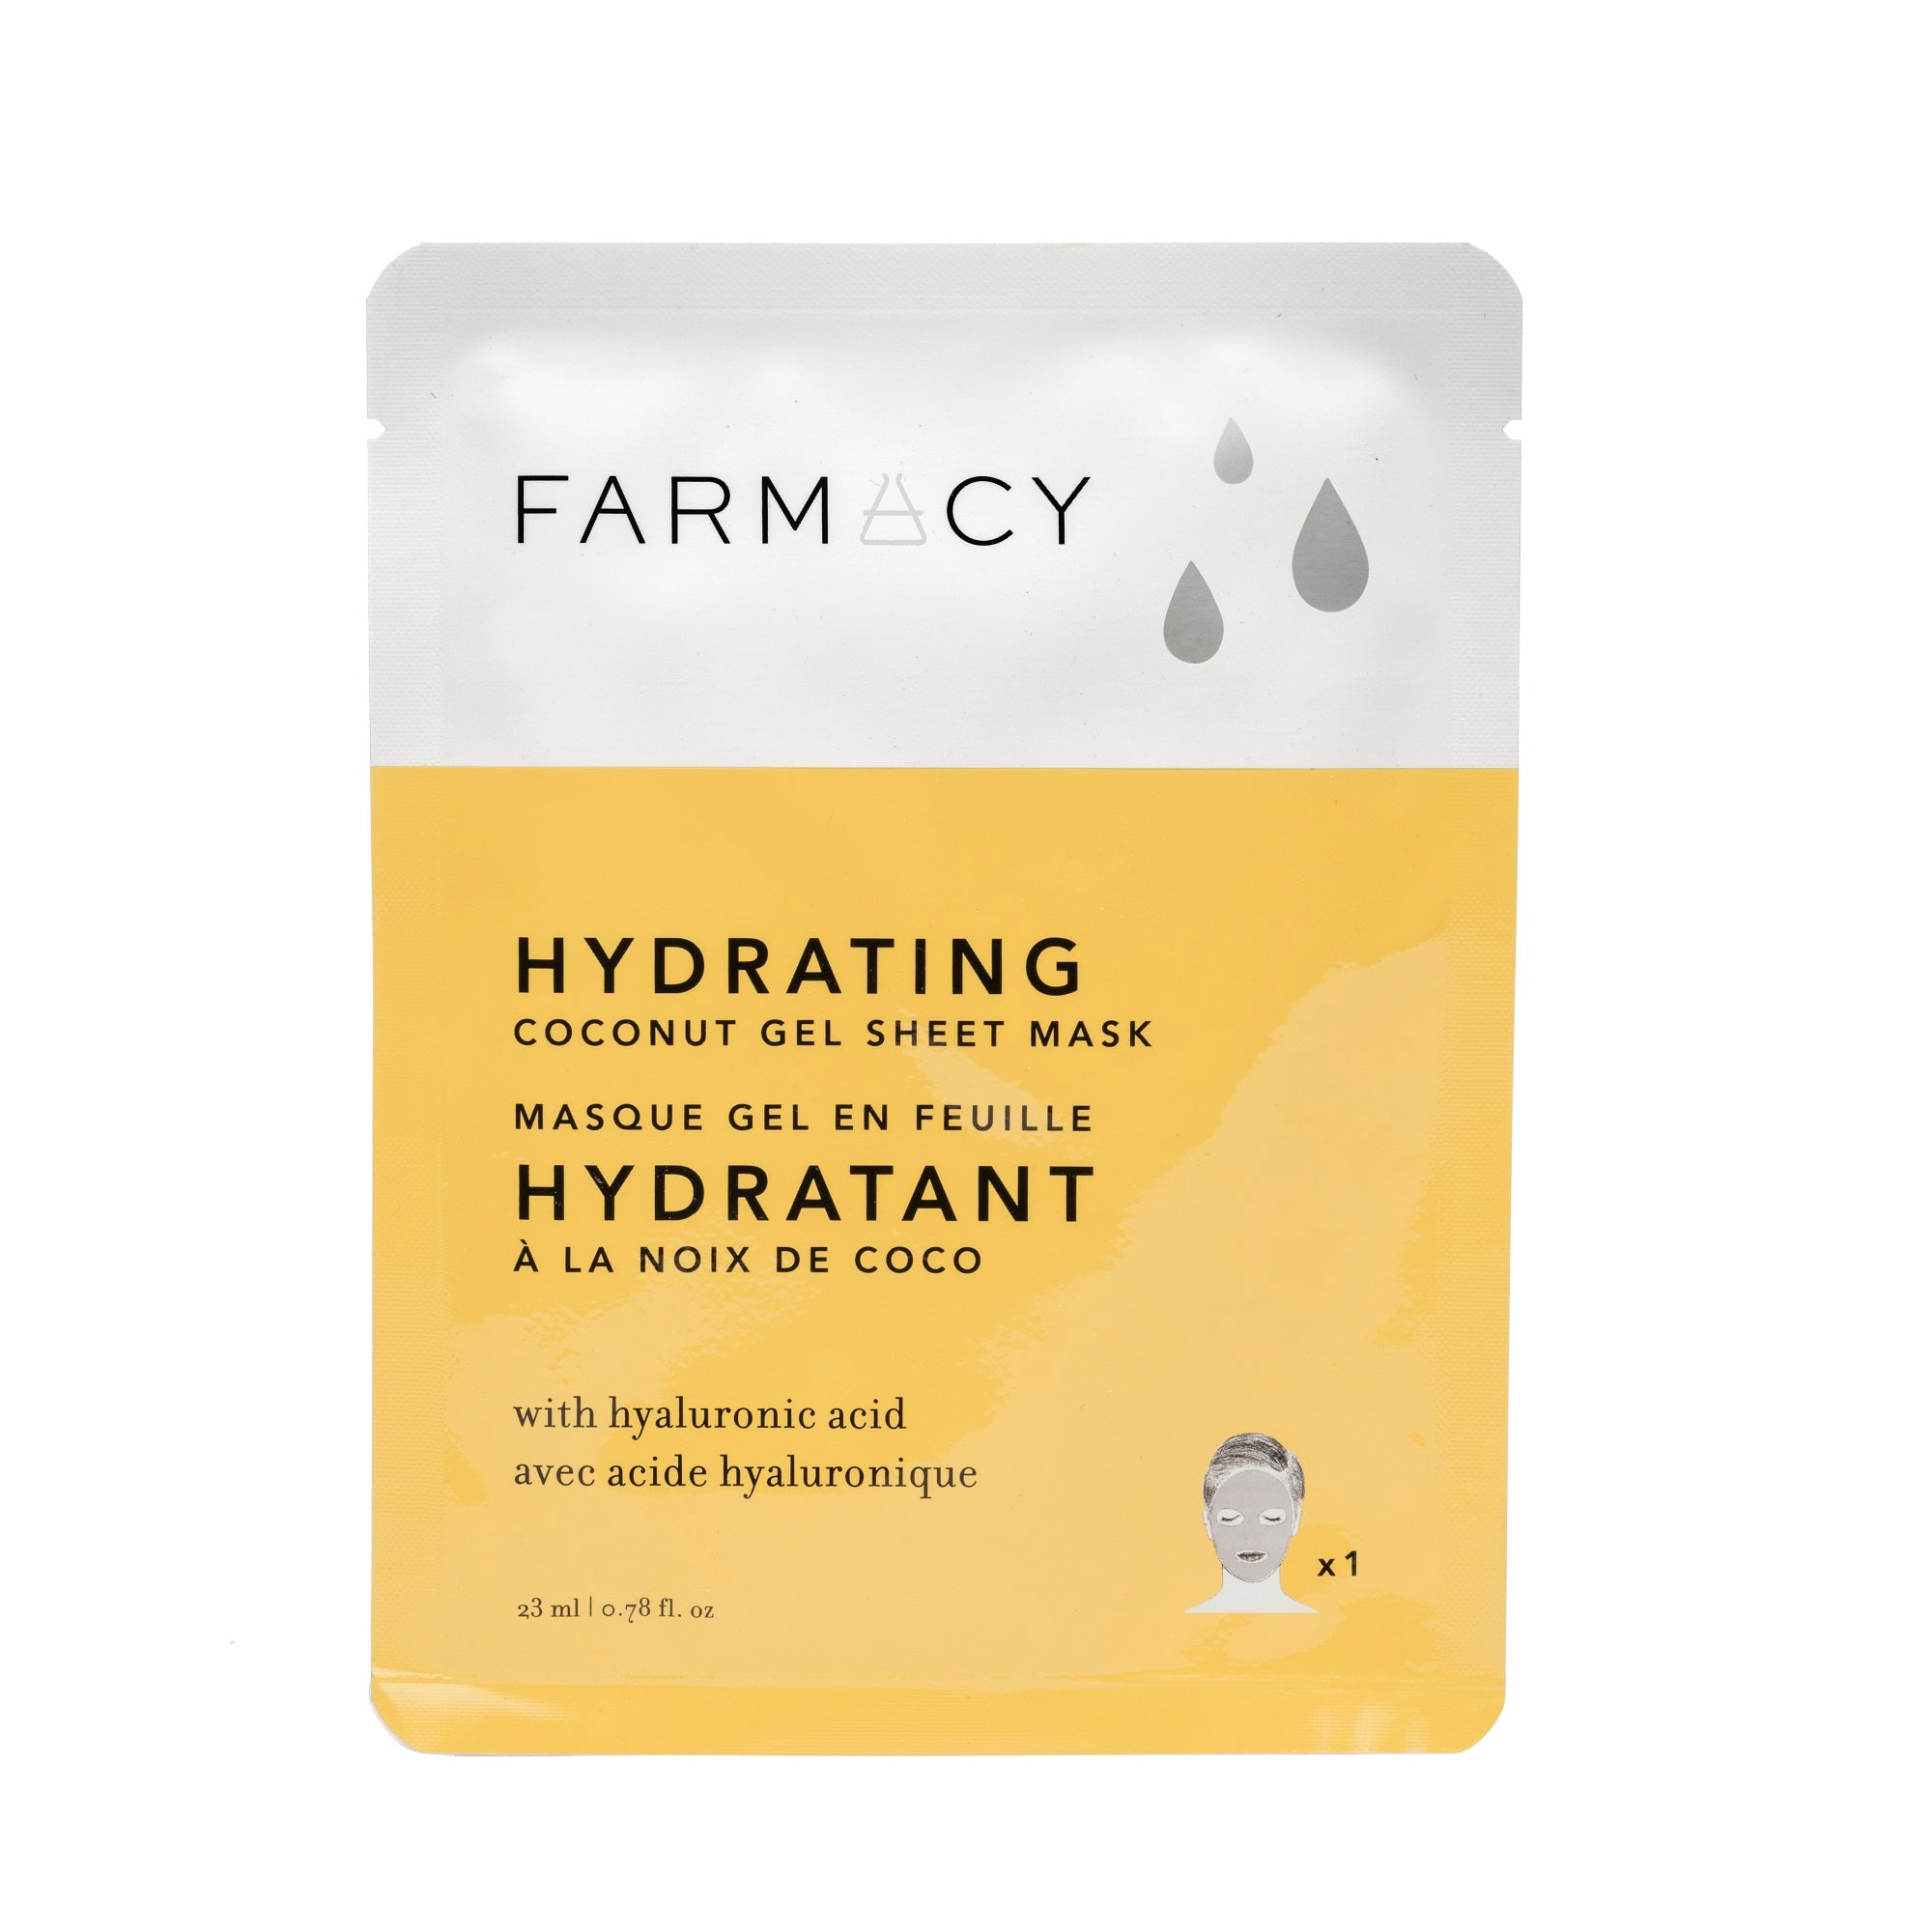 Farmacy's Hydrating Coconut Gel Sheet Mask in Packaging